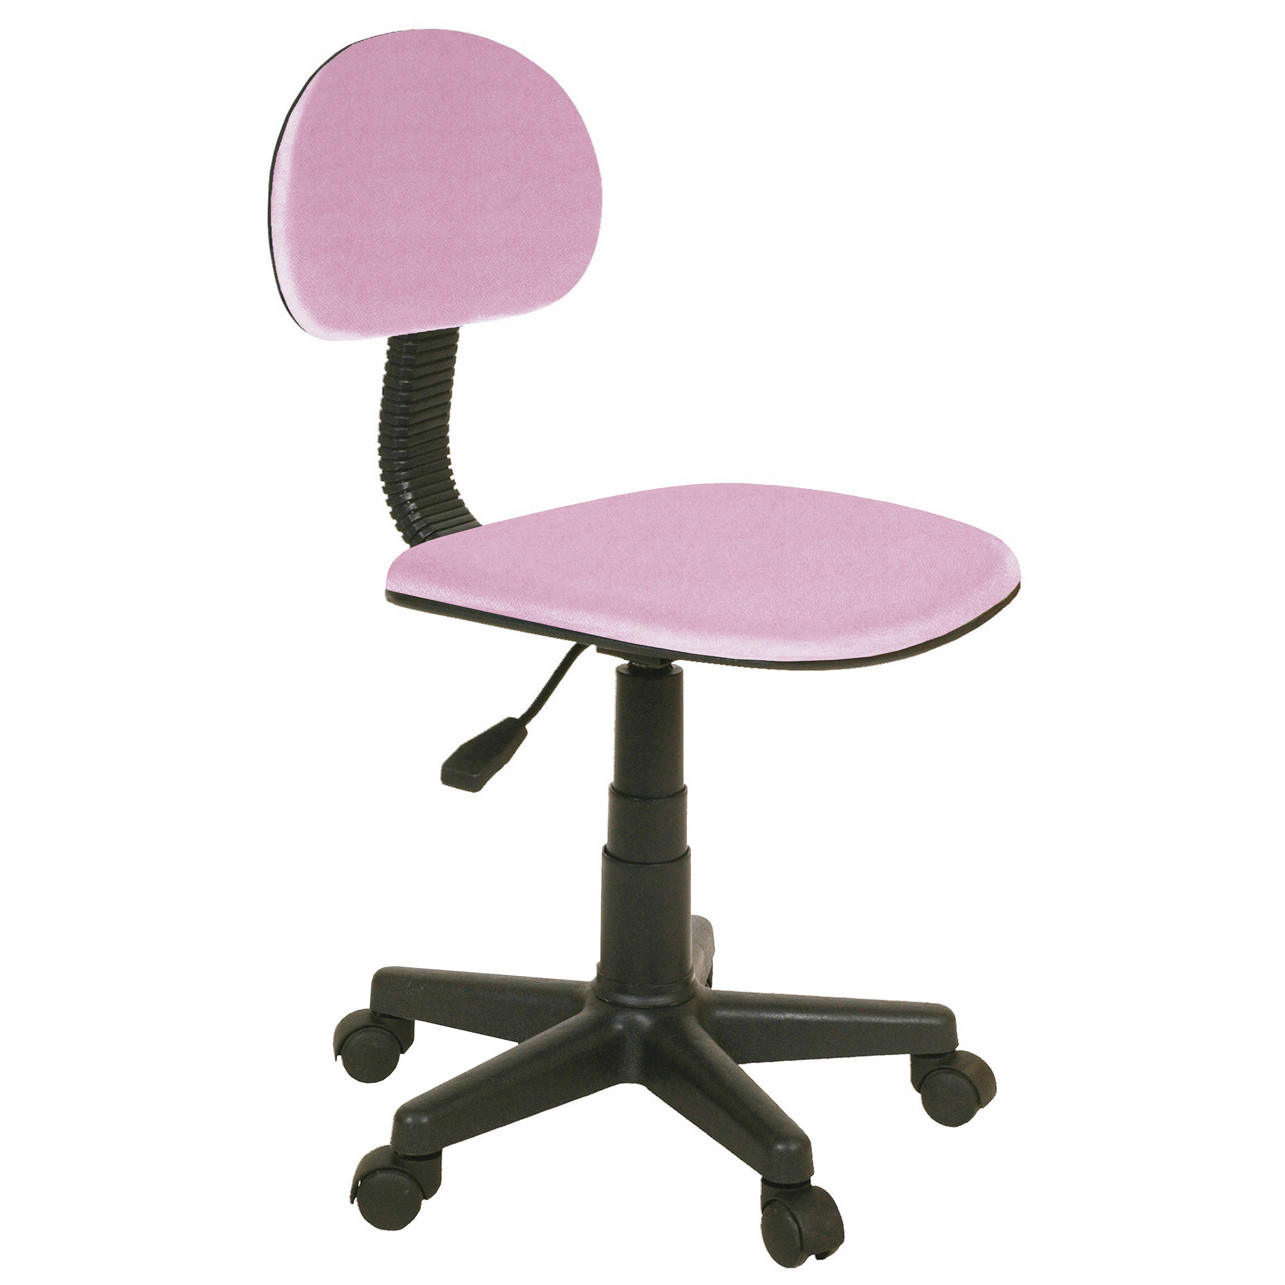 Silla escritorio juvenil Coco rosa - Muebles Polque. Tienda de